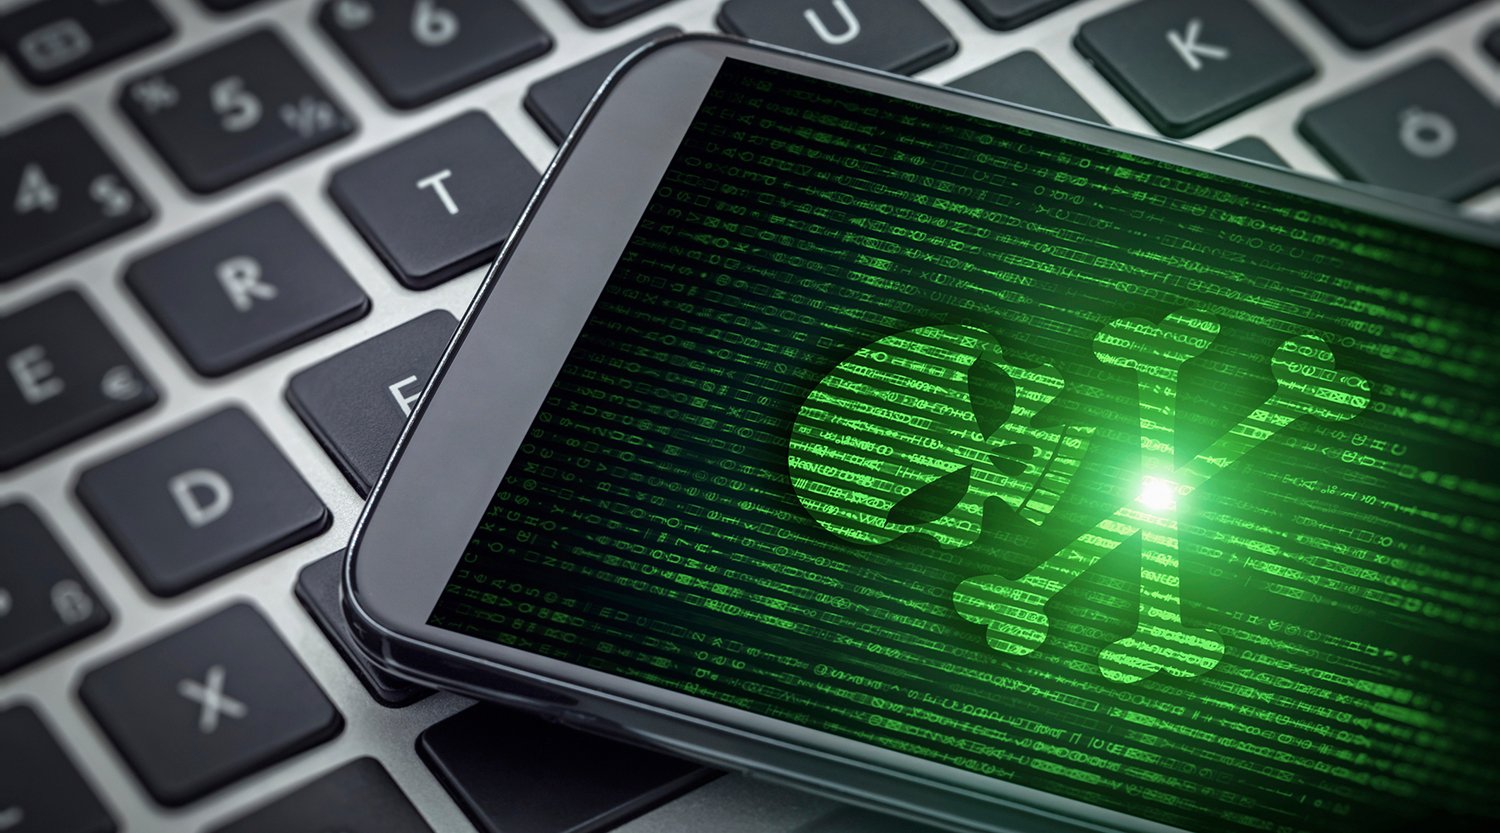 Android : Comment savoir si quelqu'un espionne votre téléphone mobile